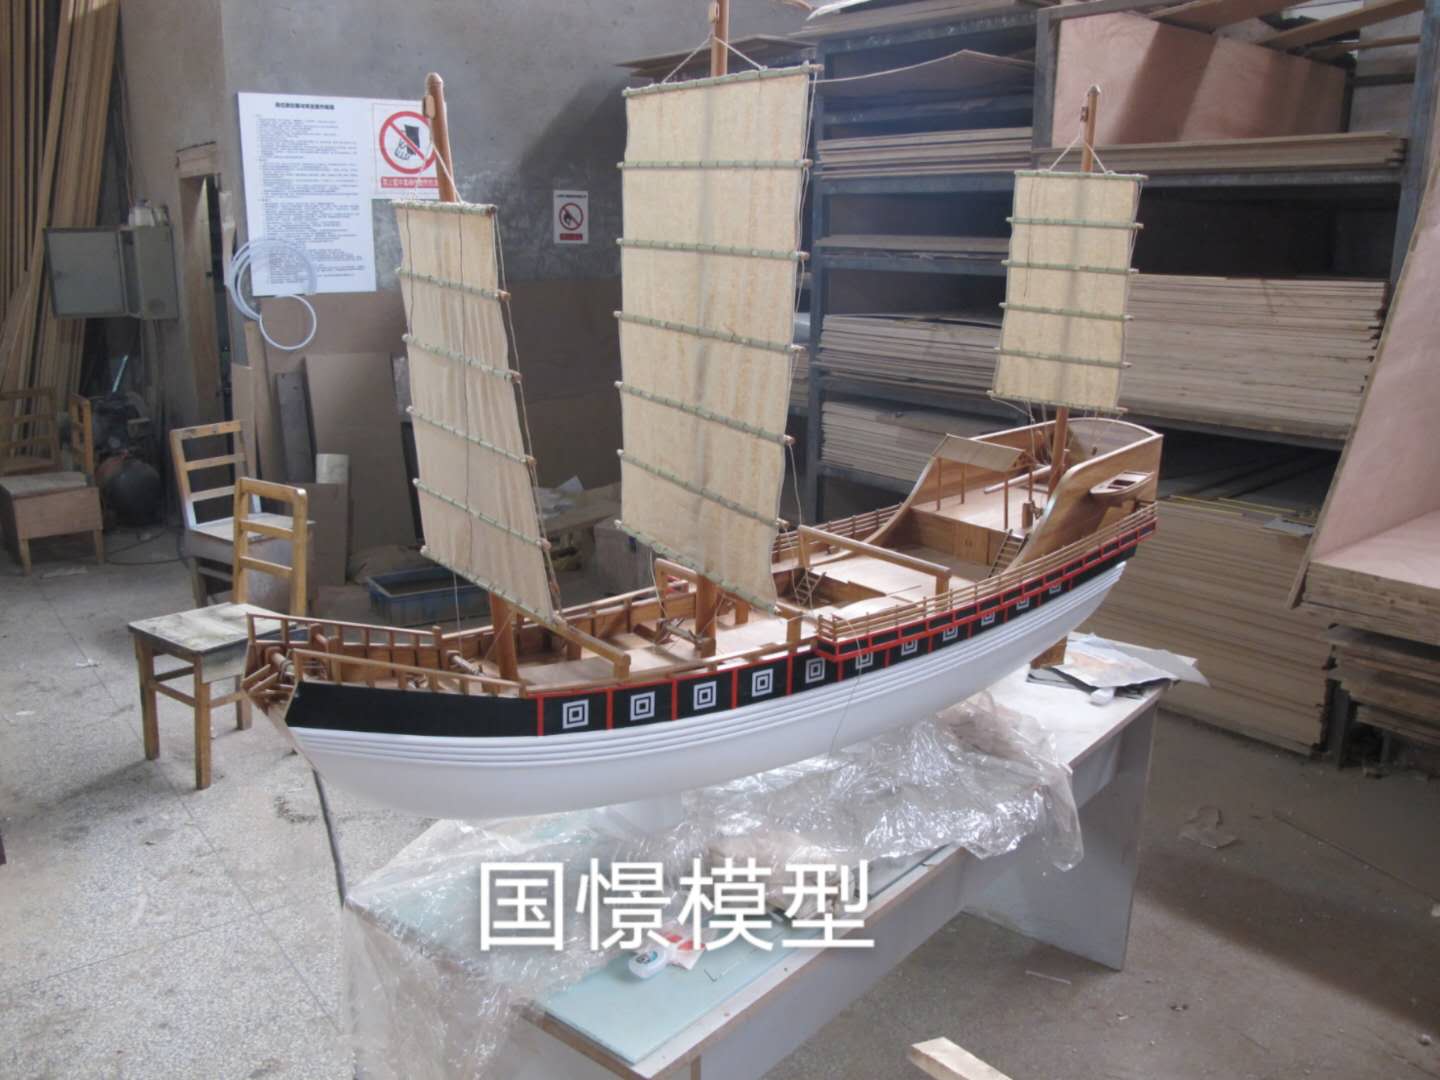 邓州市船舶模型